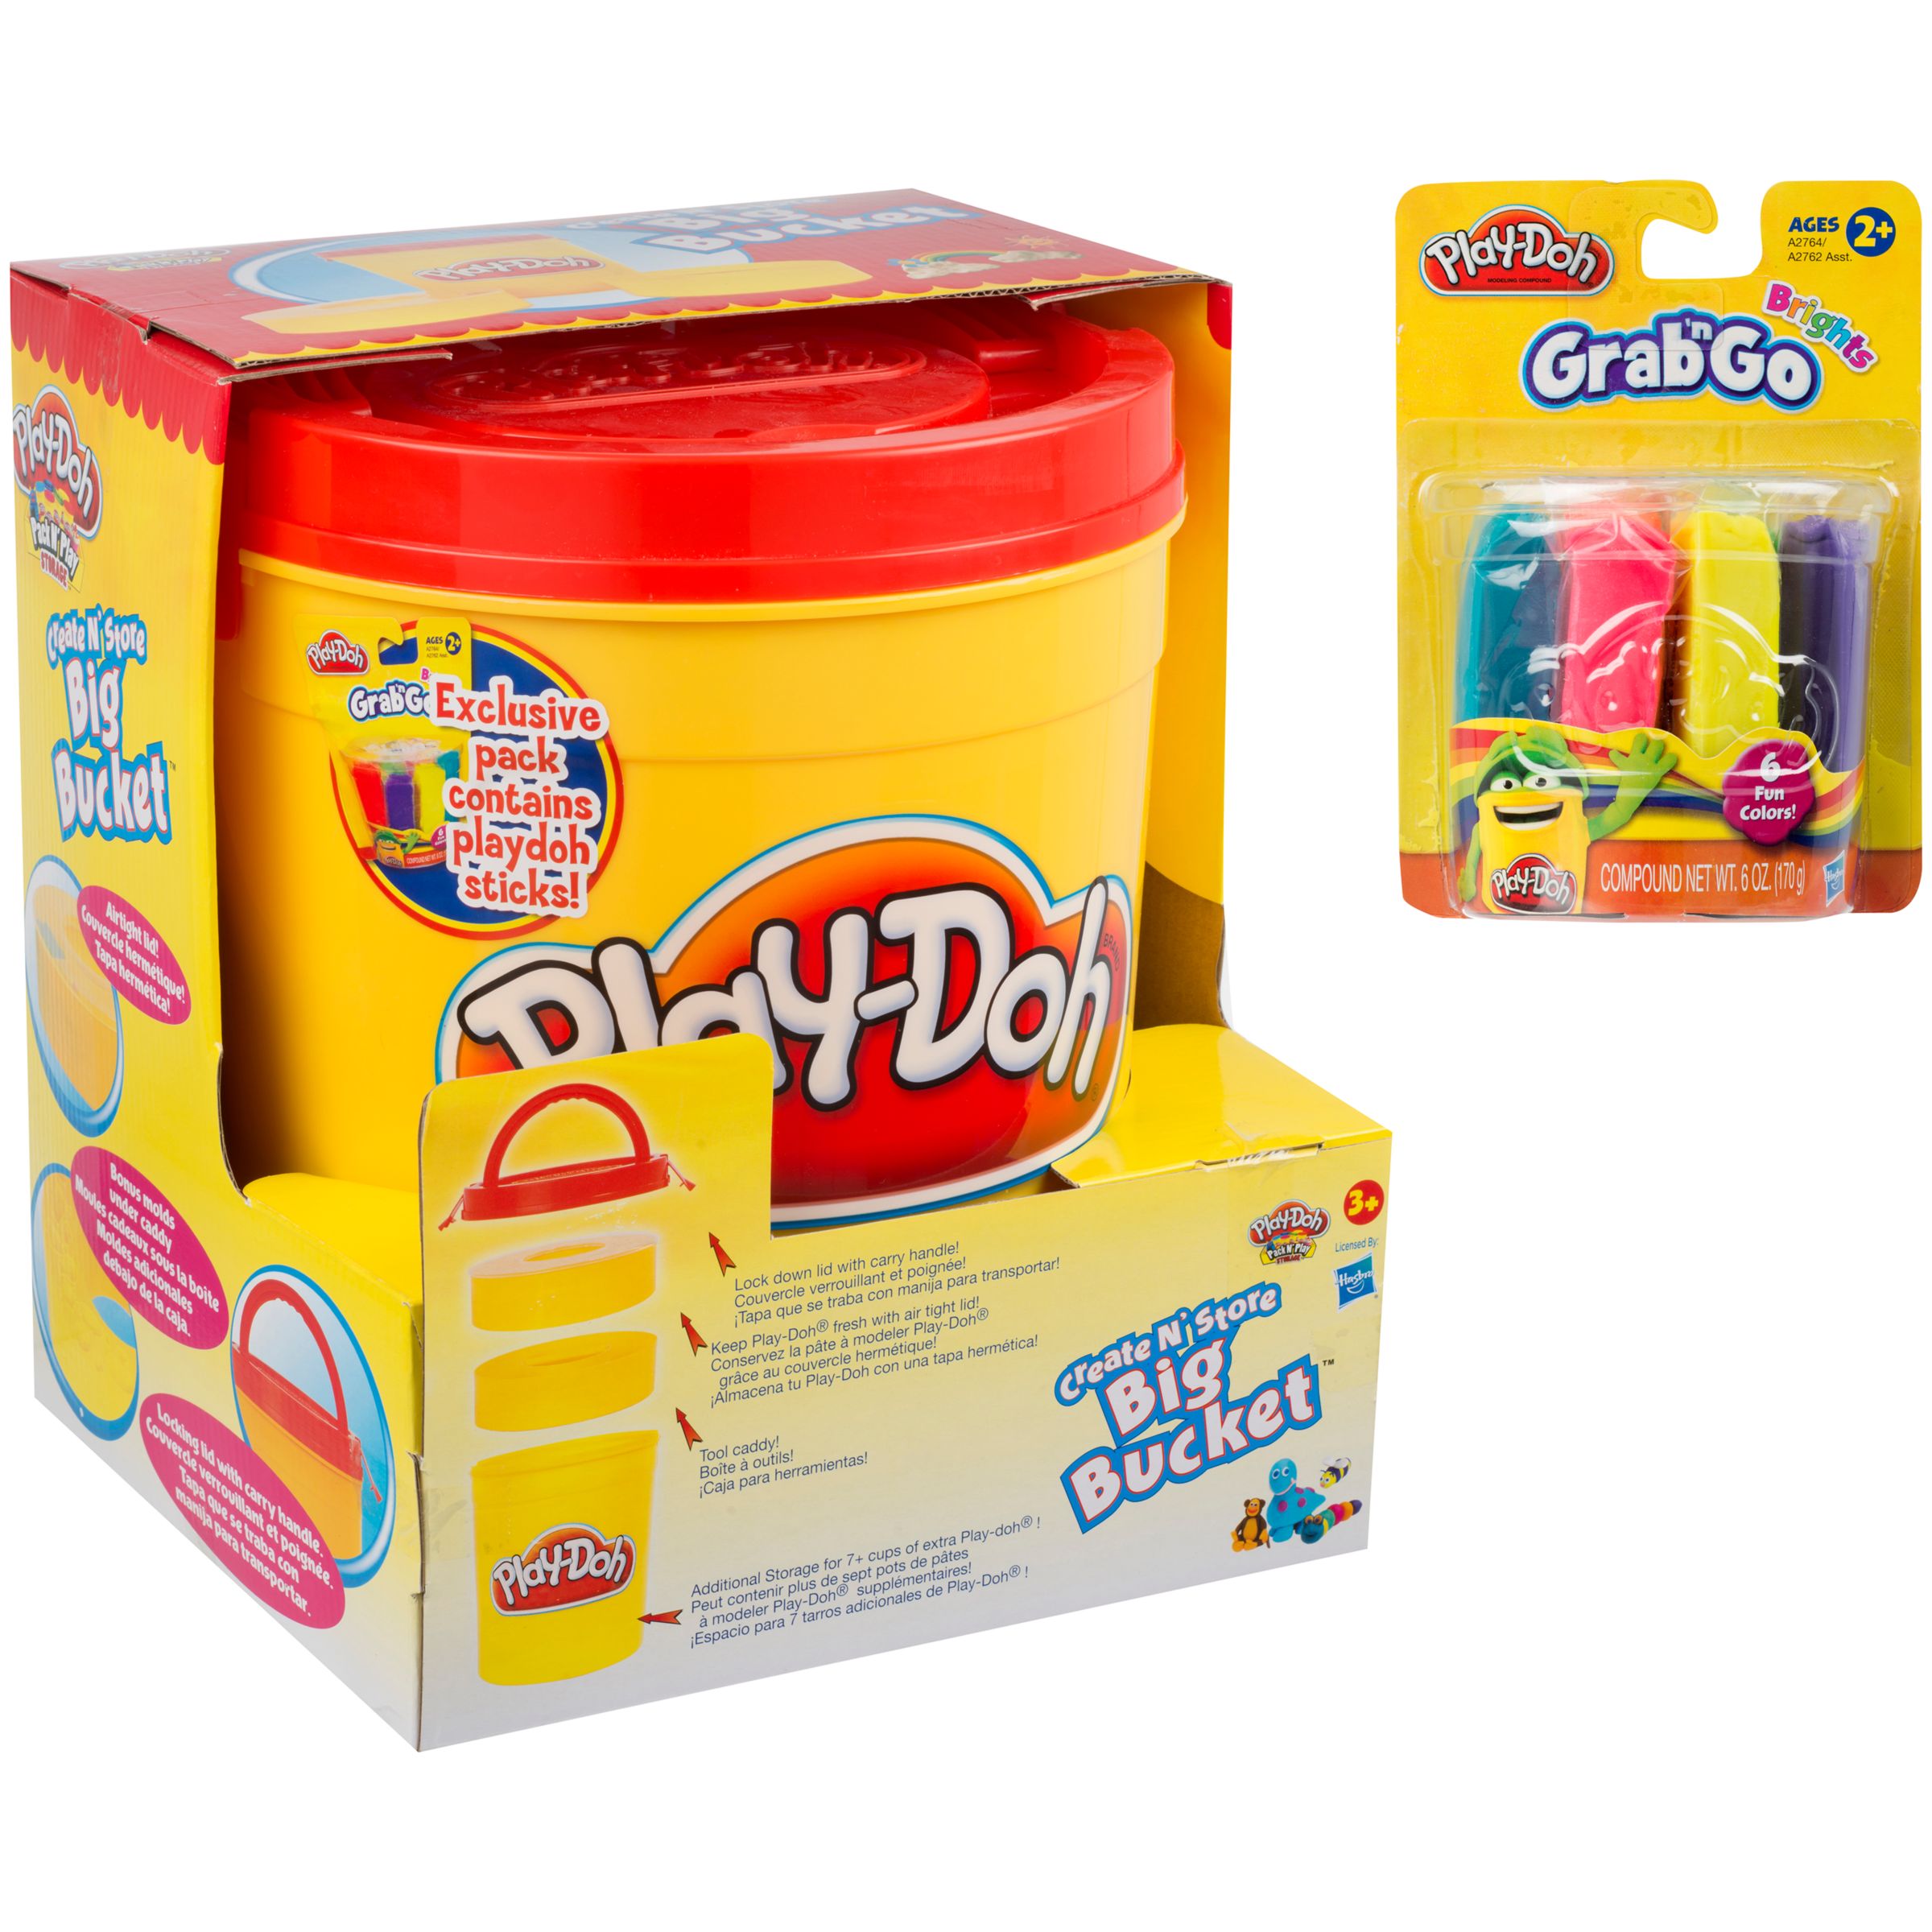 John Lewis Exclusive Play-Doh Create N' Store Big Bucket Storage Set